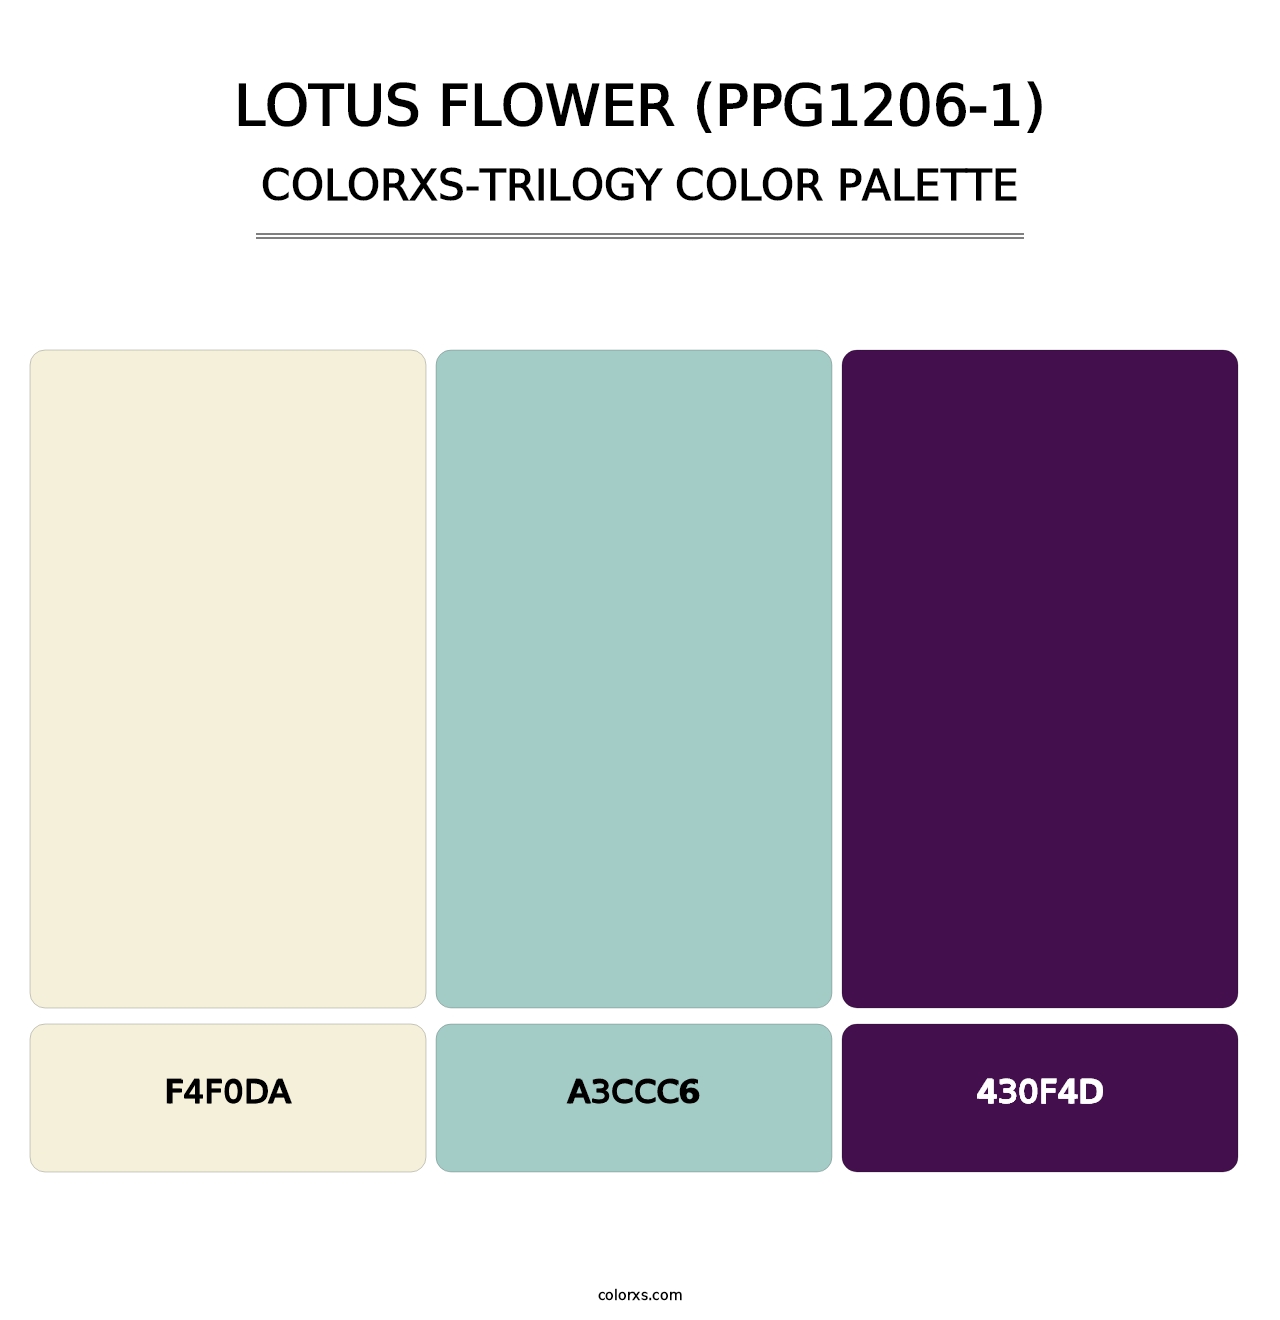 Lotus Flower (PPG1206-1) - Colorxs Trilogy Palette